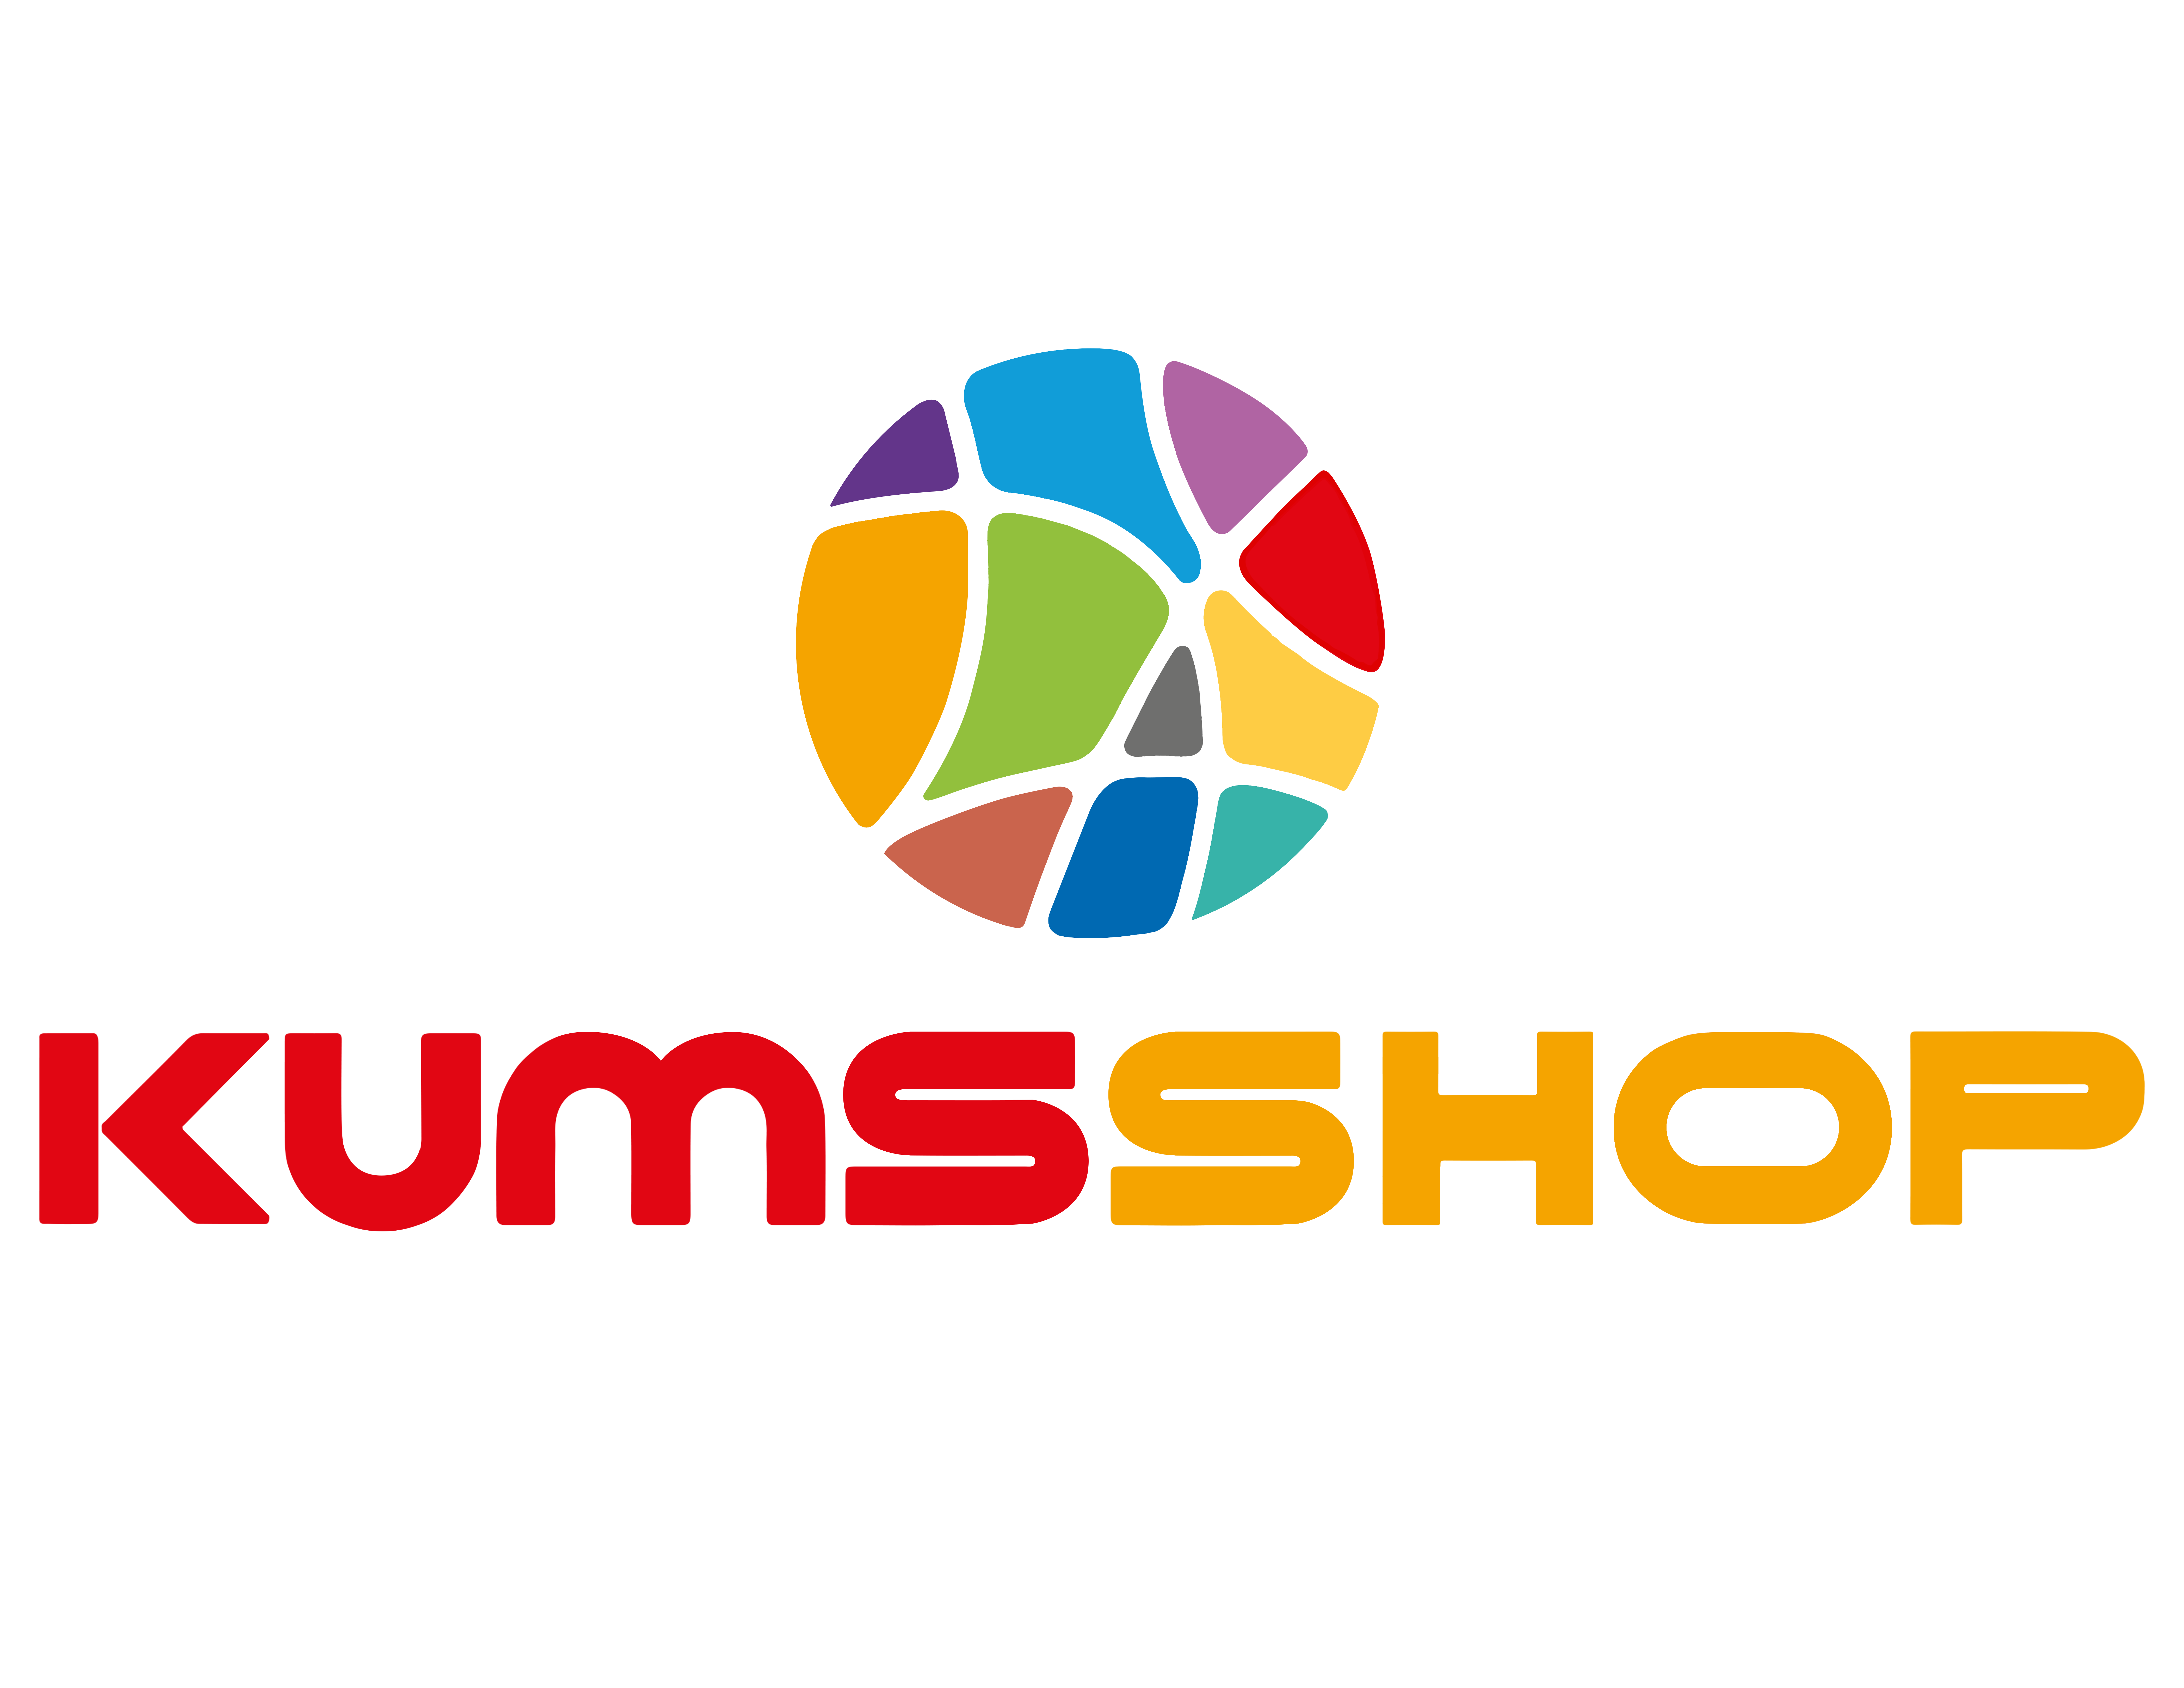 Kums Shop